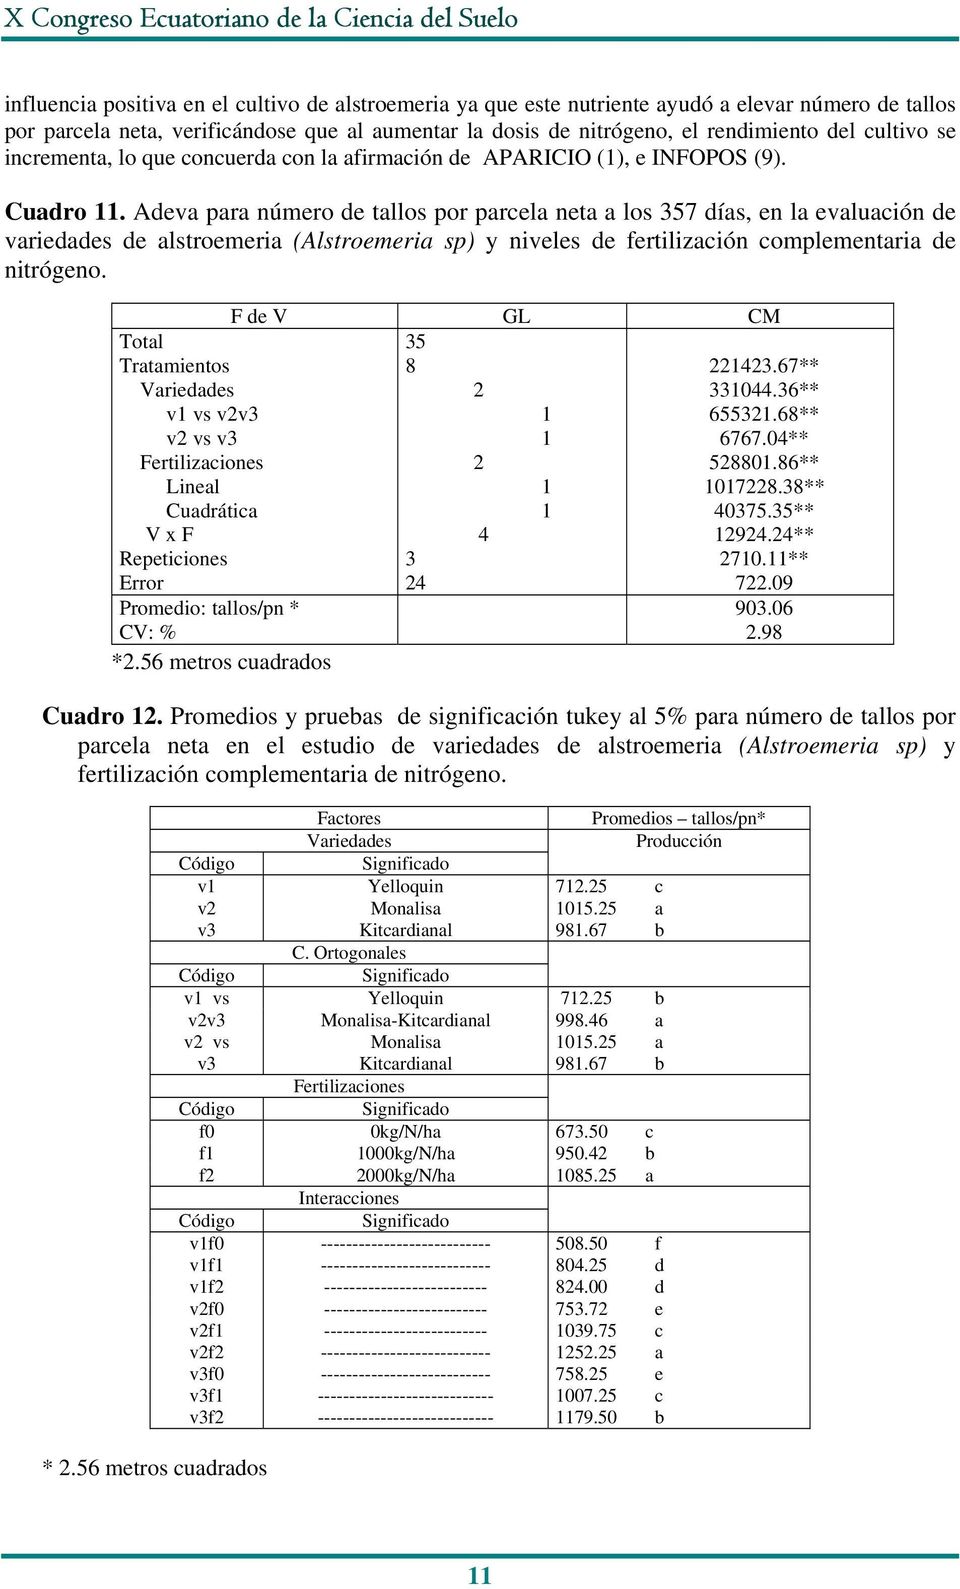 Adeva para número de tallos por parcela neta a los 57 días, en la evaluación de variedades de alstroemeria (Alstroemeria sp) y niveles de fertilización complementaria de Total v vs vv v vs v Lineal